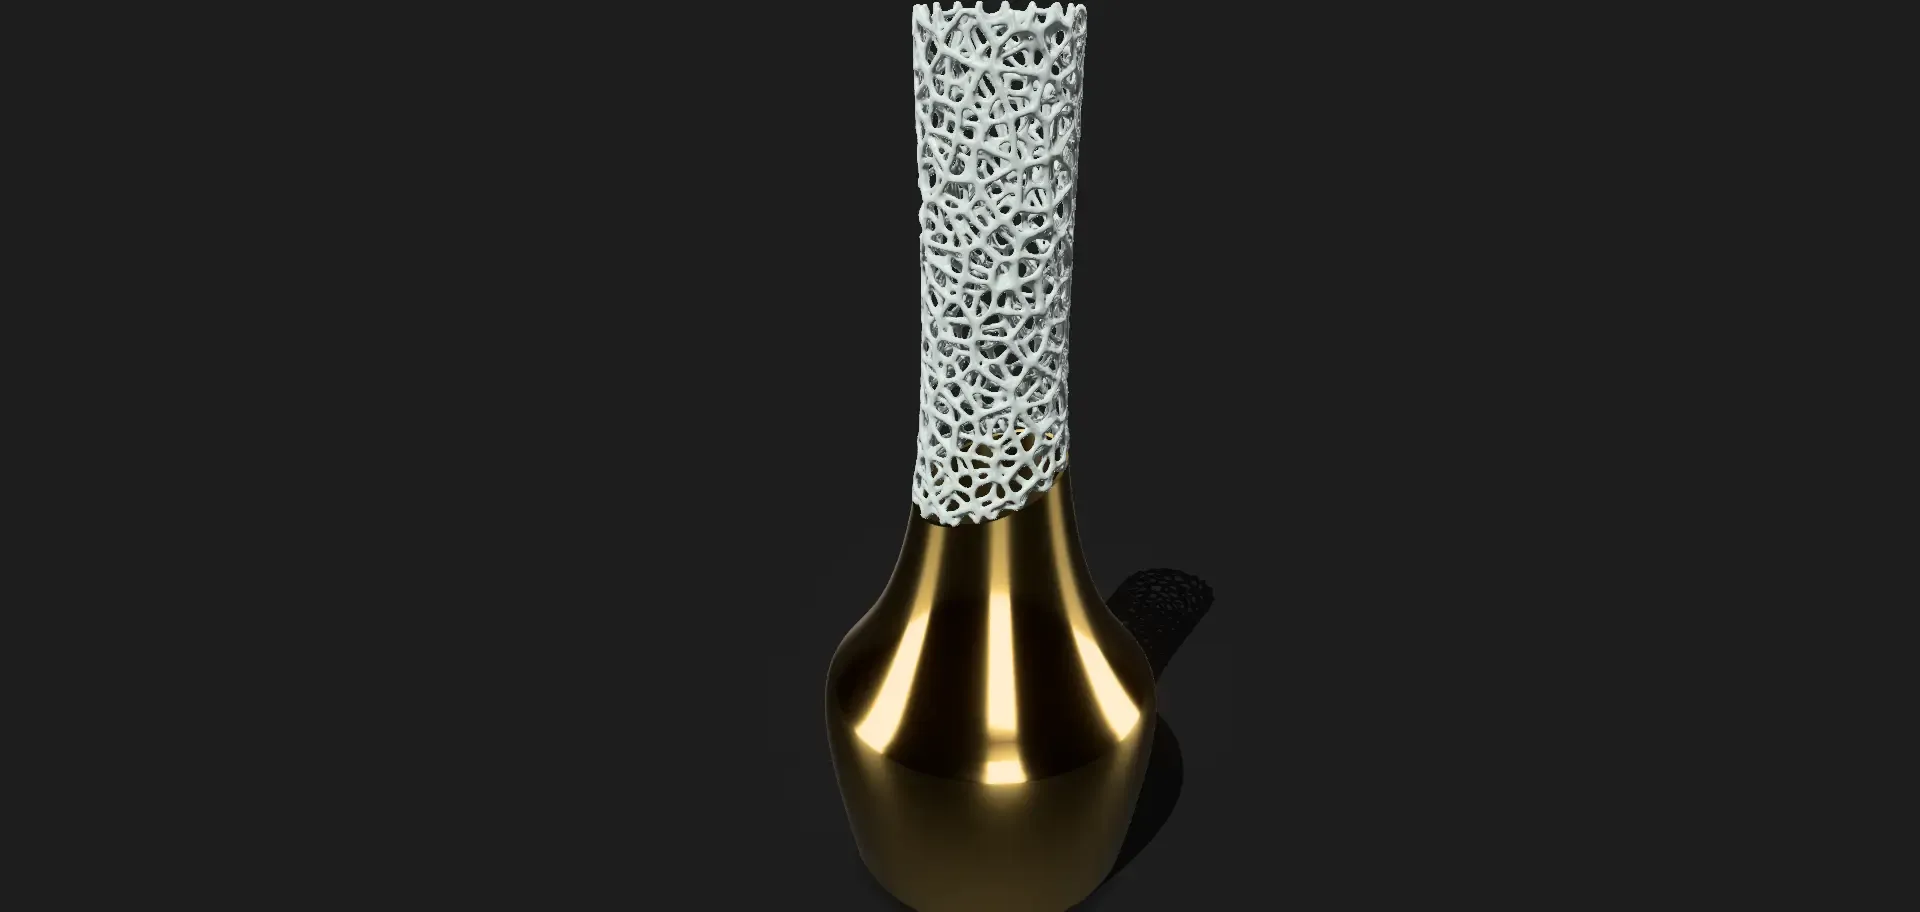 Vase#3